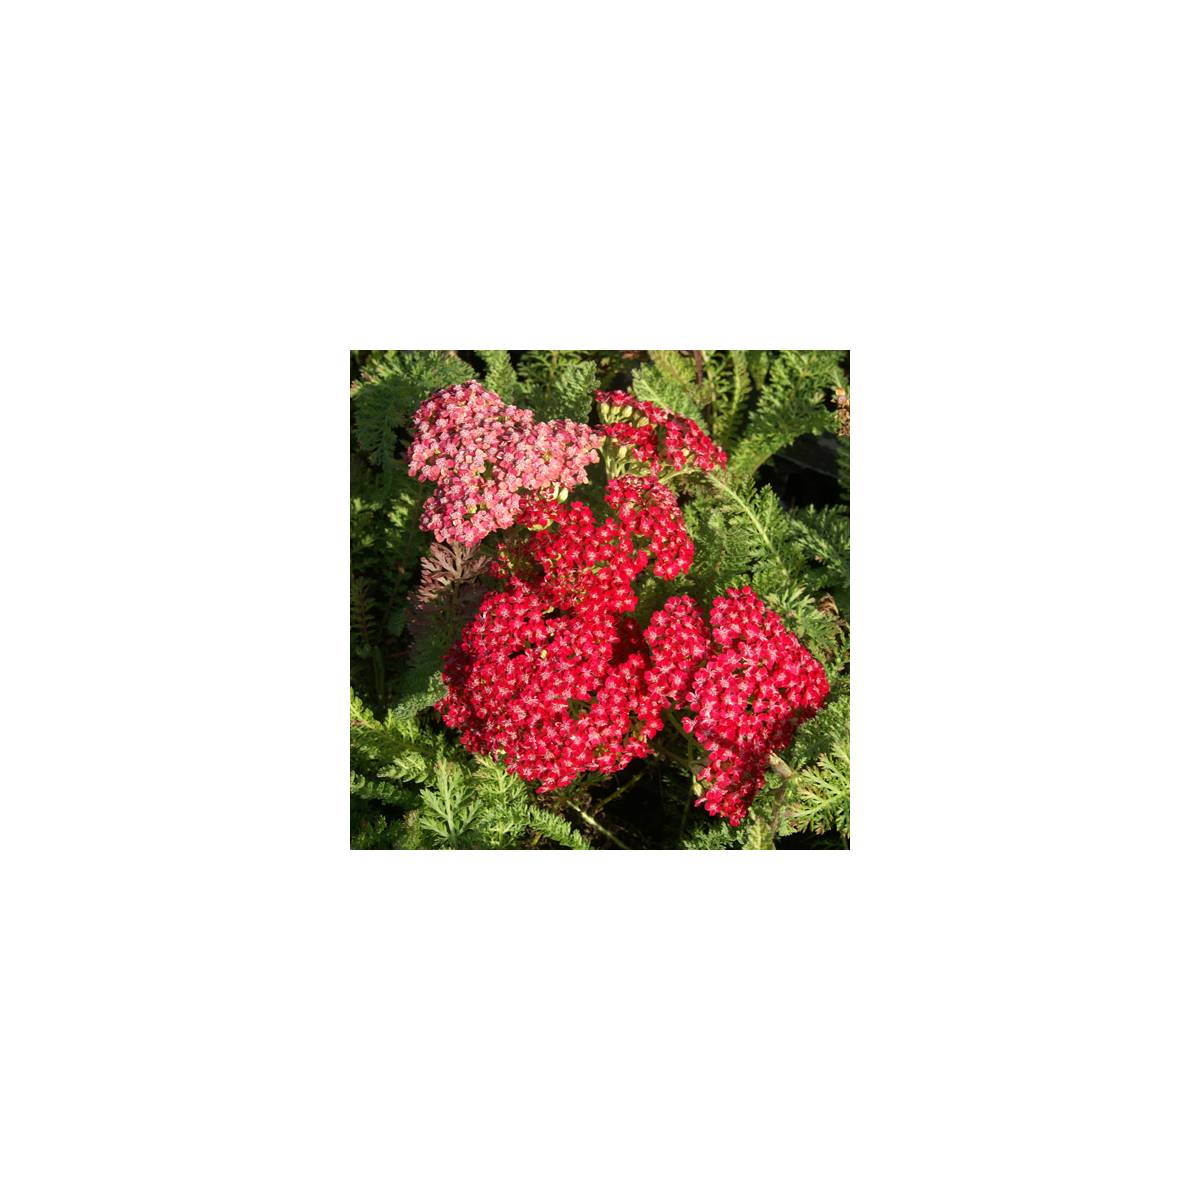 Achillée millefeuille red velvet/achillea millefolium 'red velvet'[-]godet